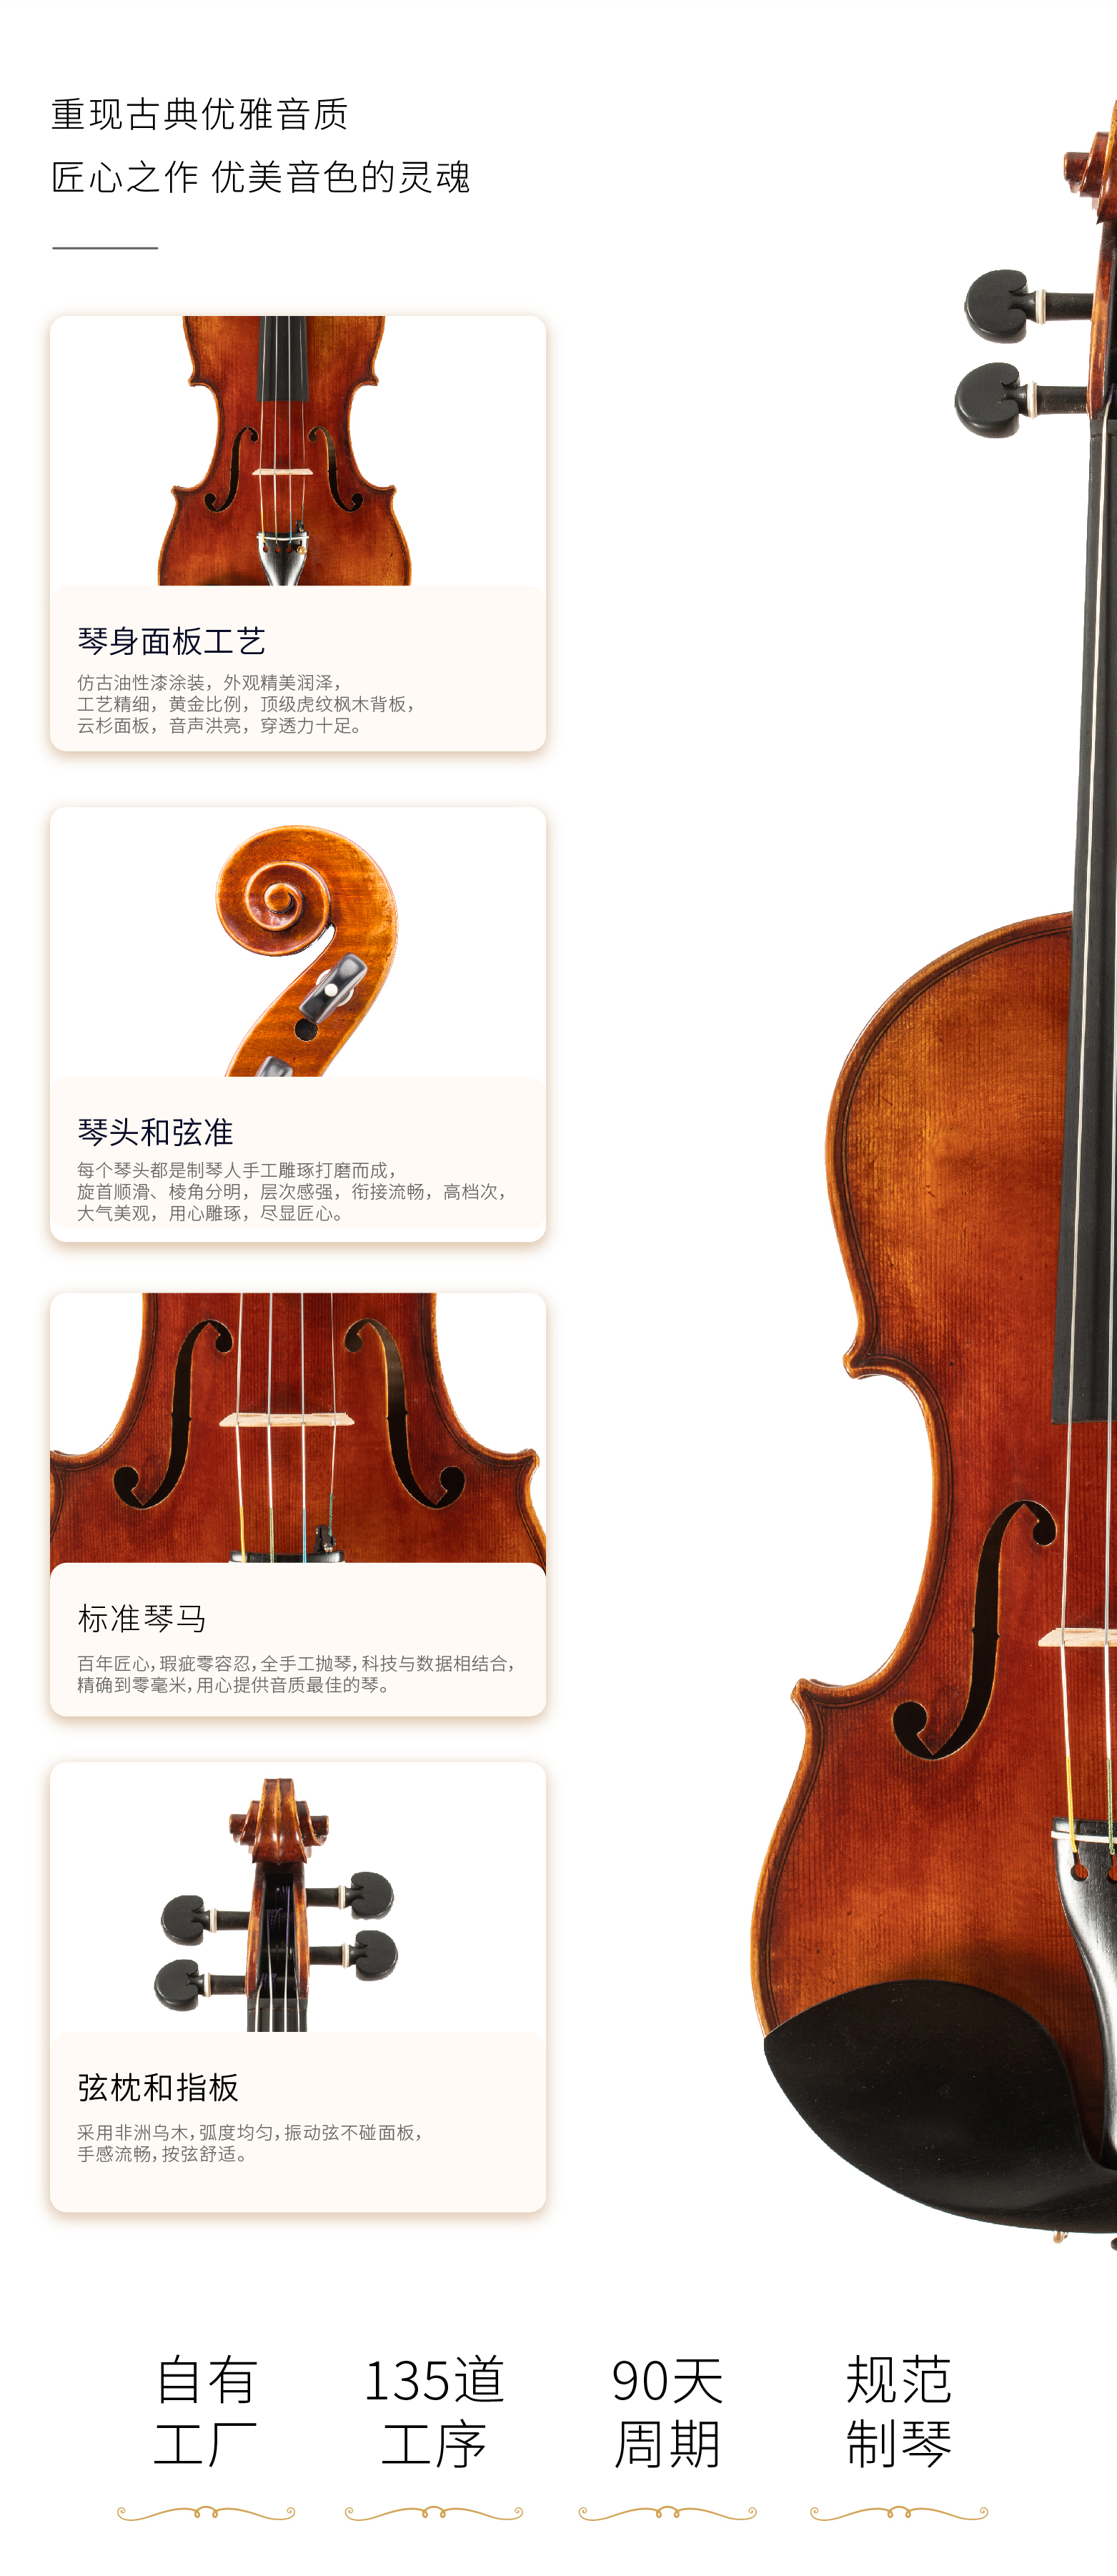 熙珑乐器专营店-详情-v1-2_SV891小提琴_复制_PC-副本-2_07.jpg